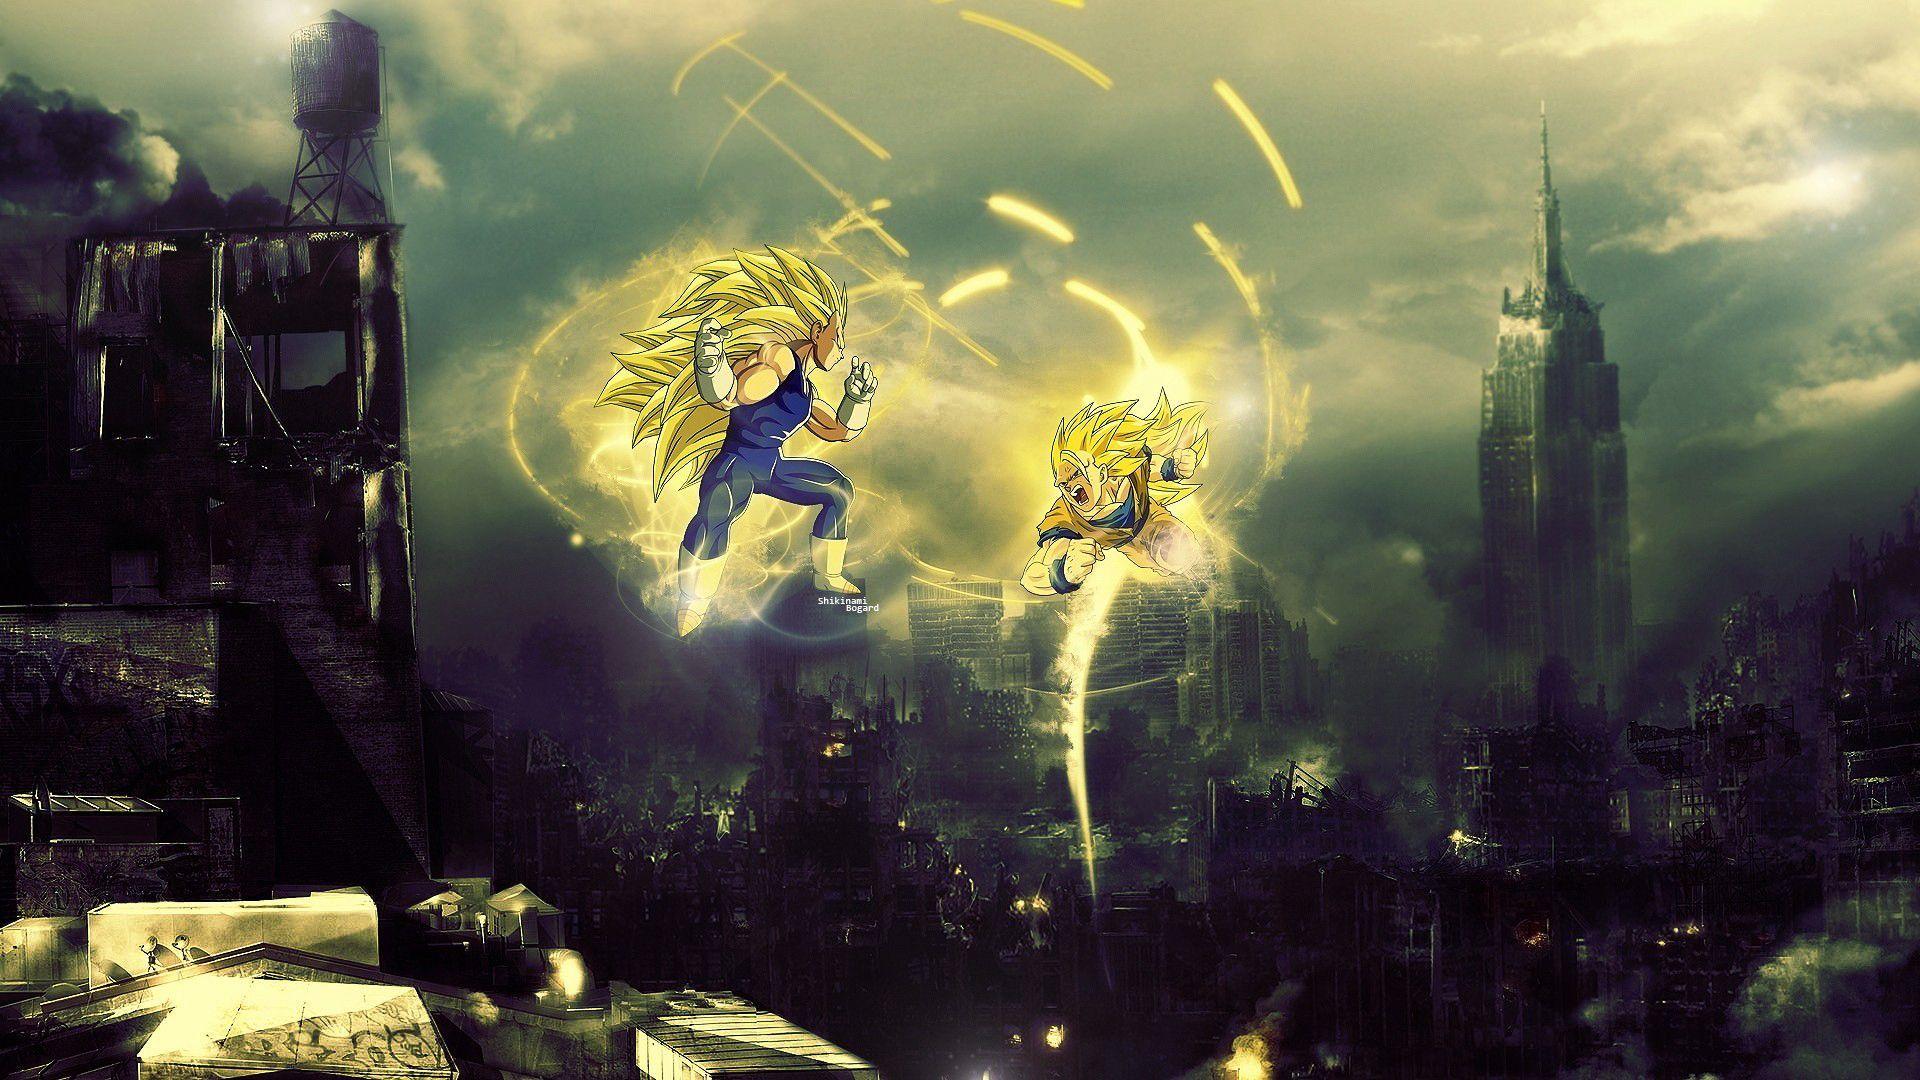 Super Saiyan 3 Vegeta vs Goku Dragon Ball Z Anime HD Wall